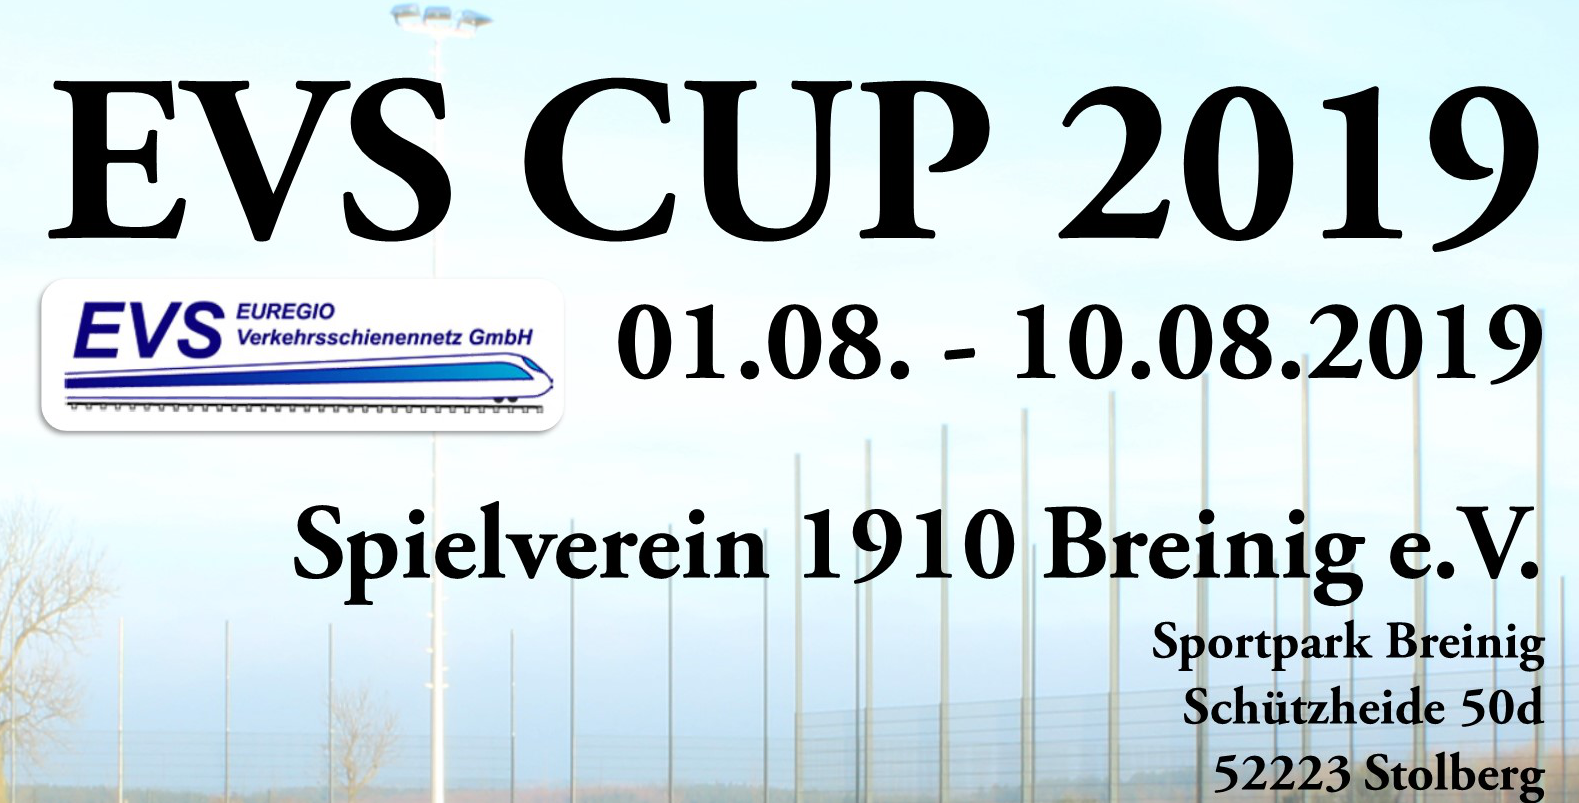 EVS CUP 2019